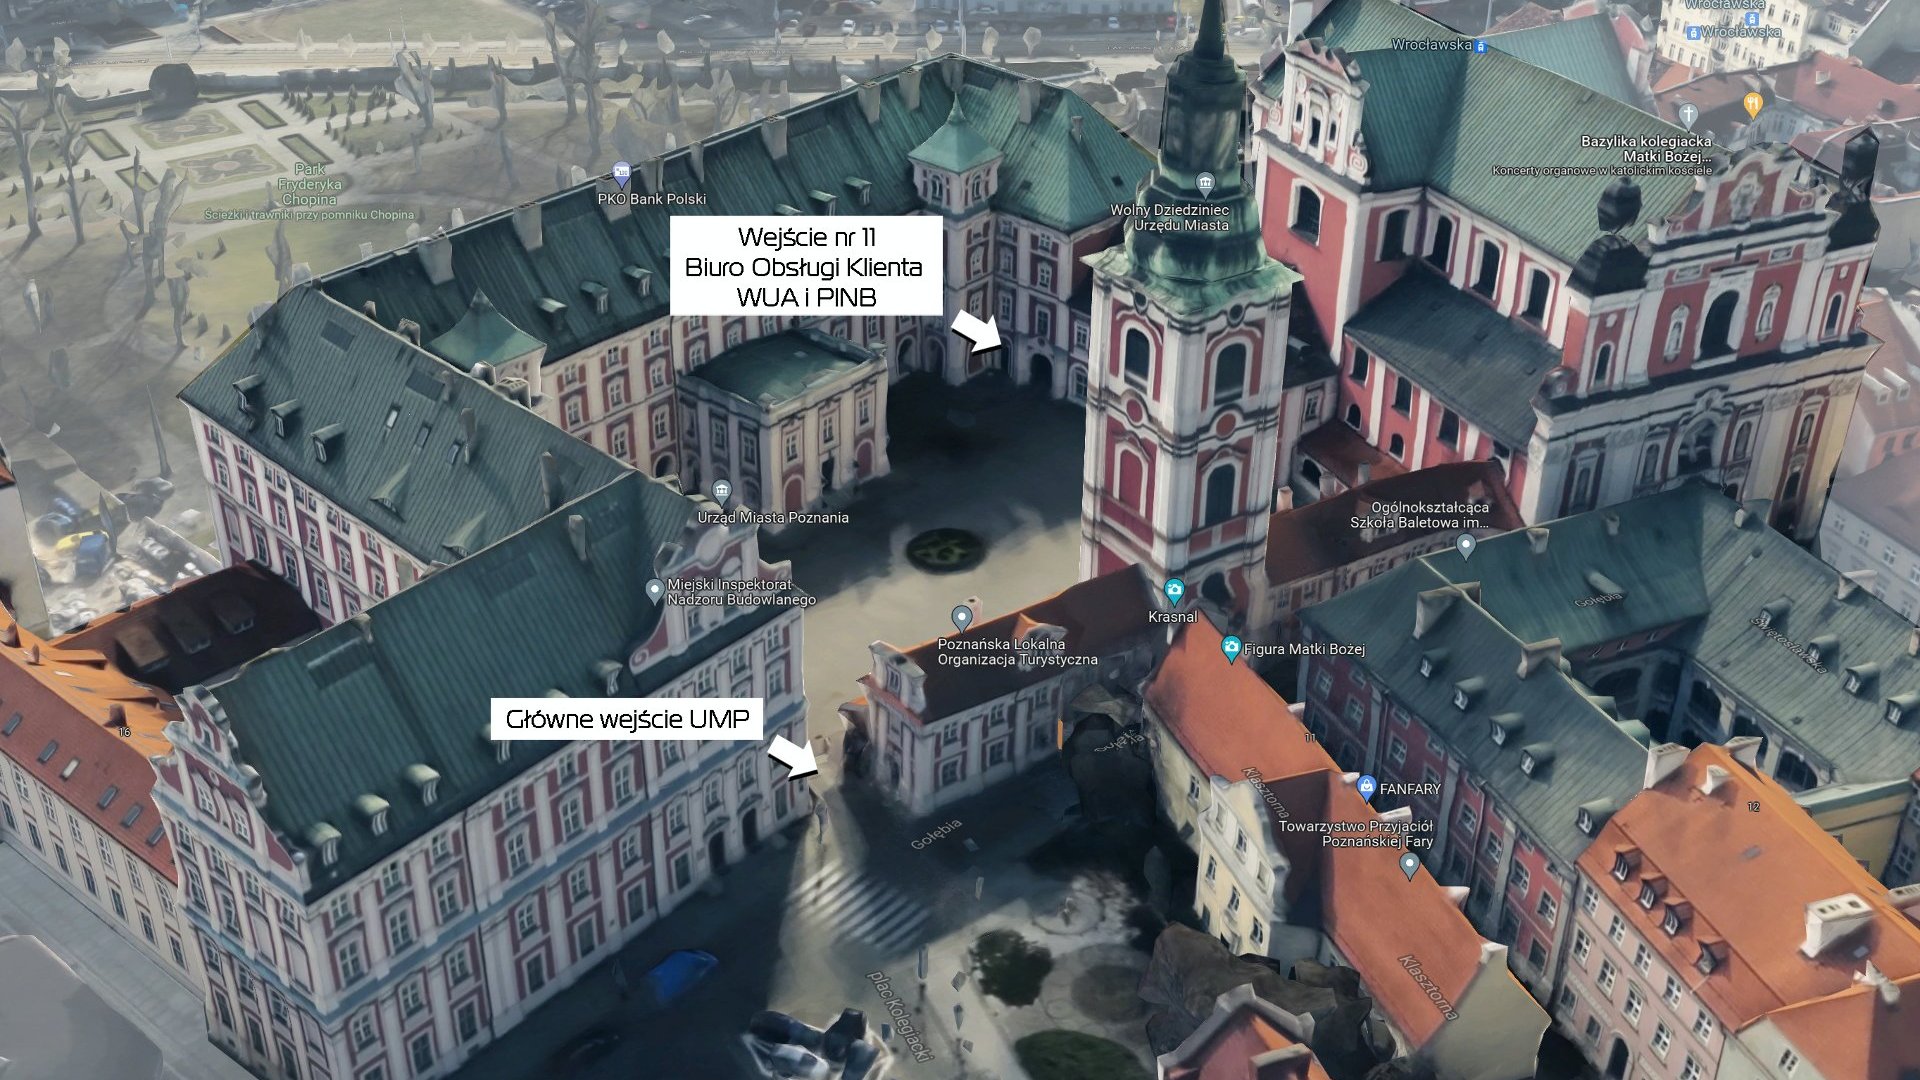 Zdjęcie przedstawia budynek UMP wraz z dziedzińcem i opisanymi wejściami - grafika artykułu